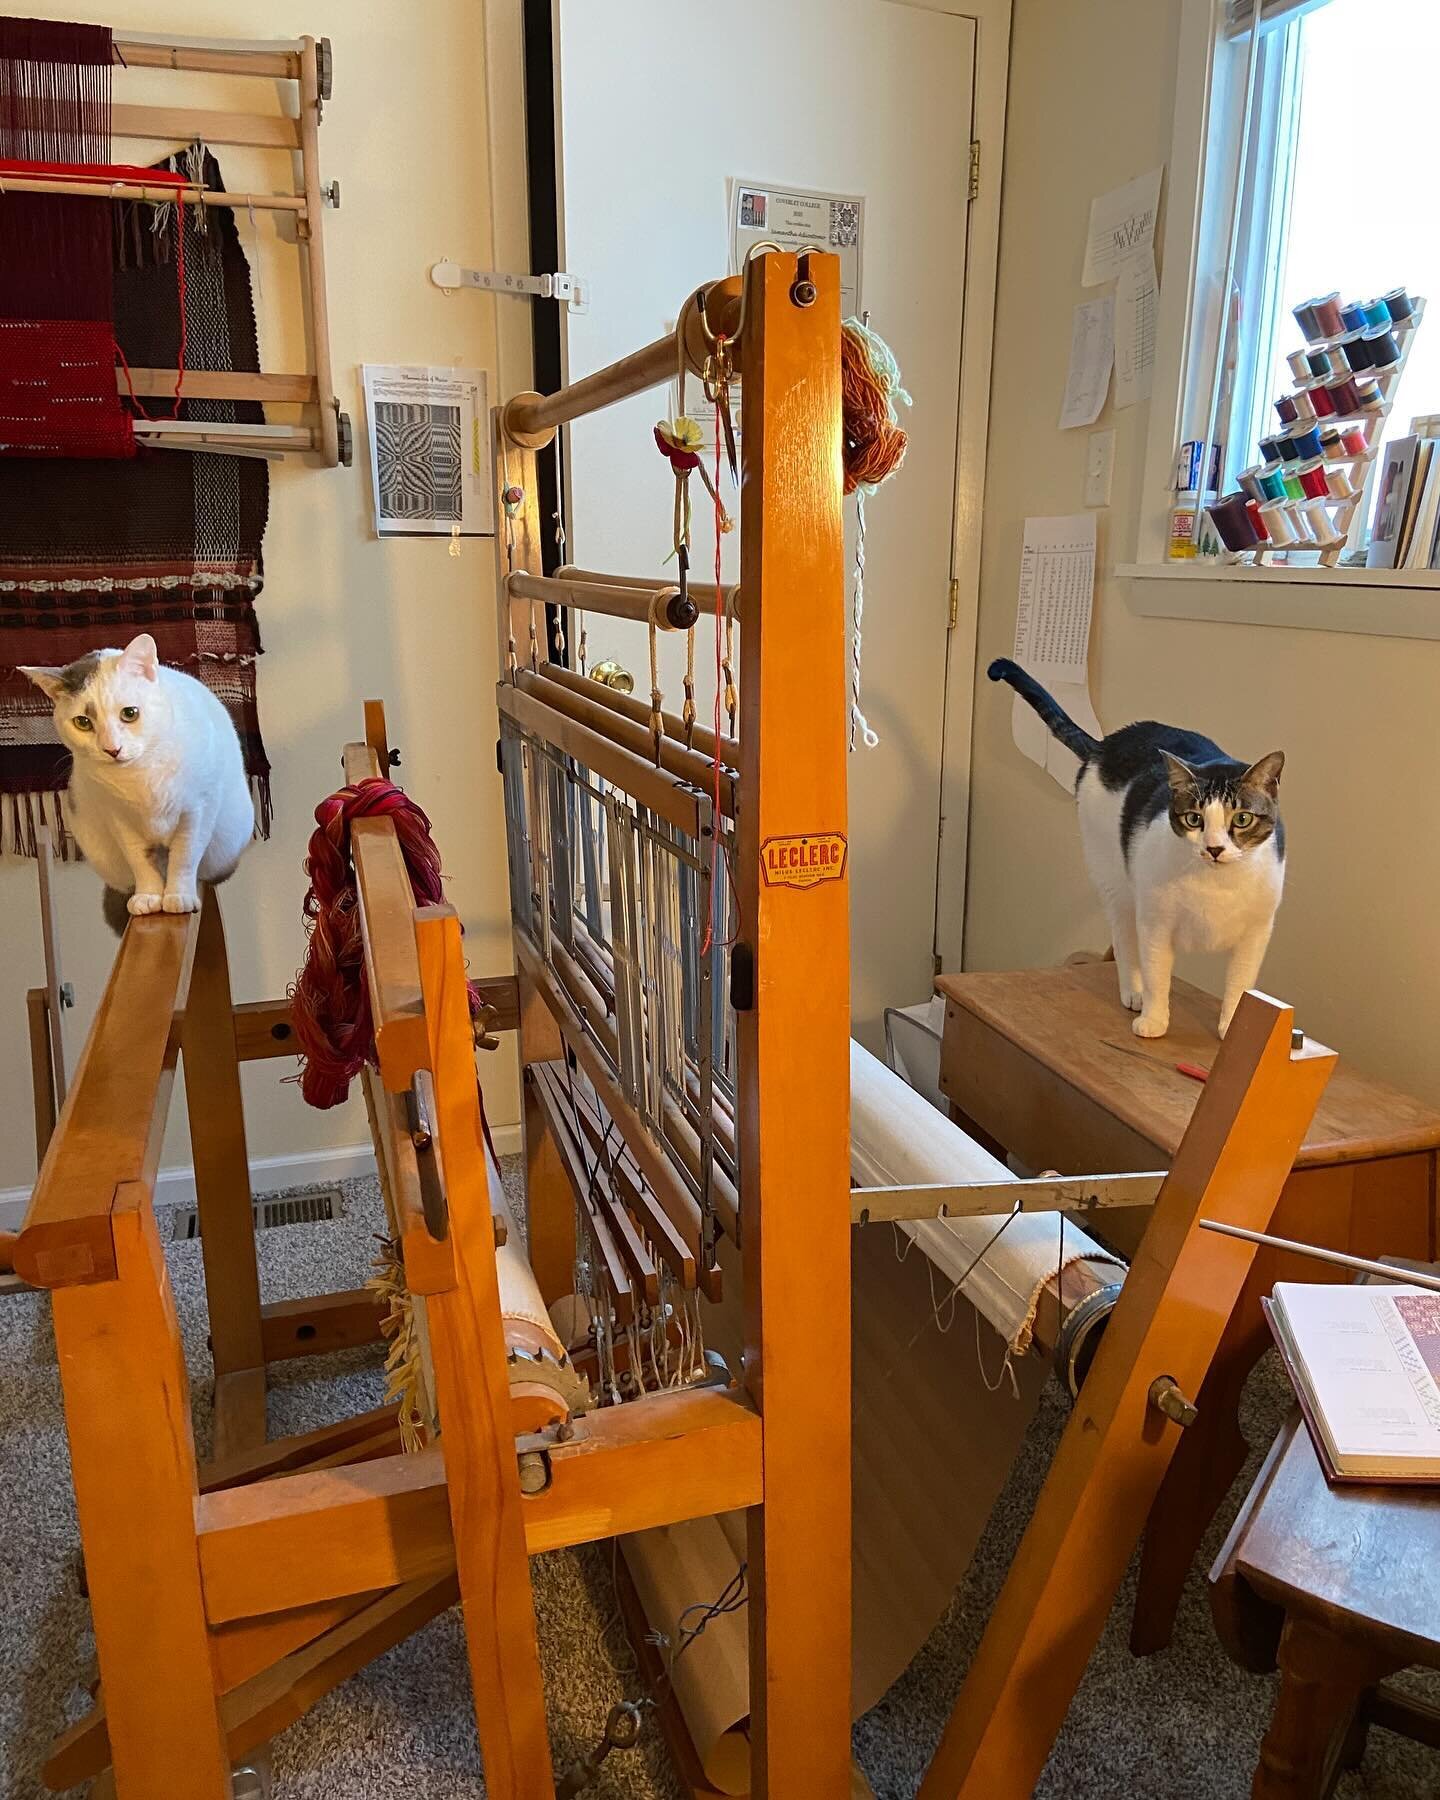 the best weaving assistants ever 🥹 
#floorloomweaving #withcats